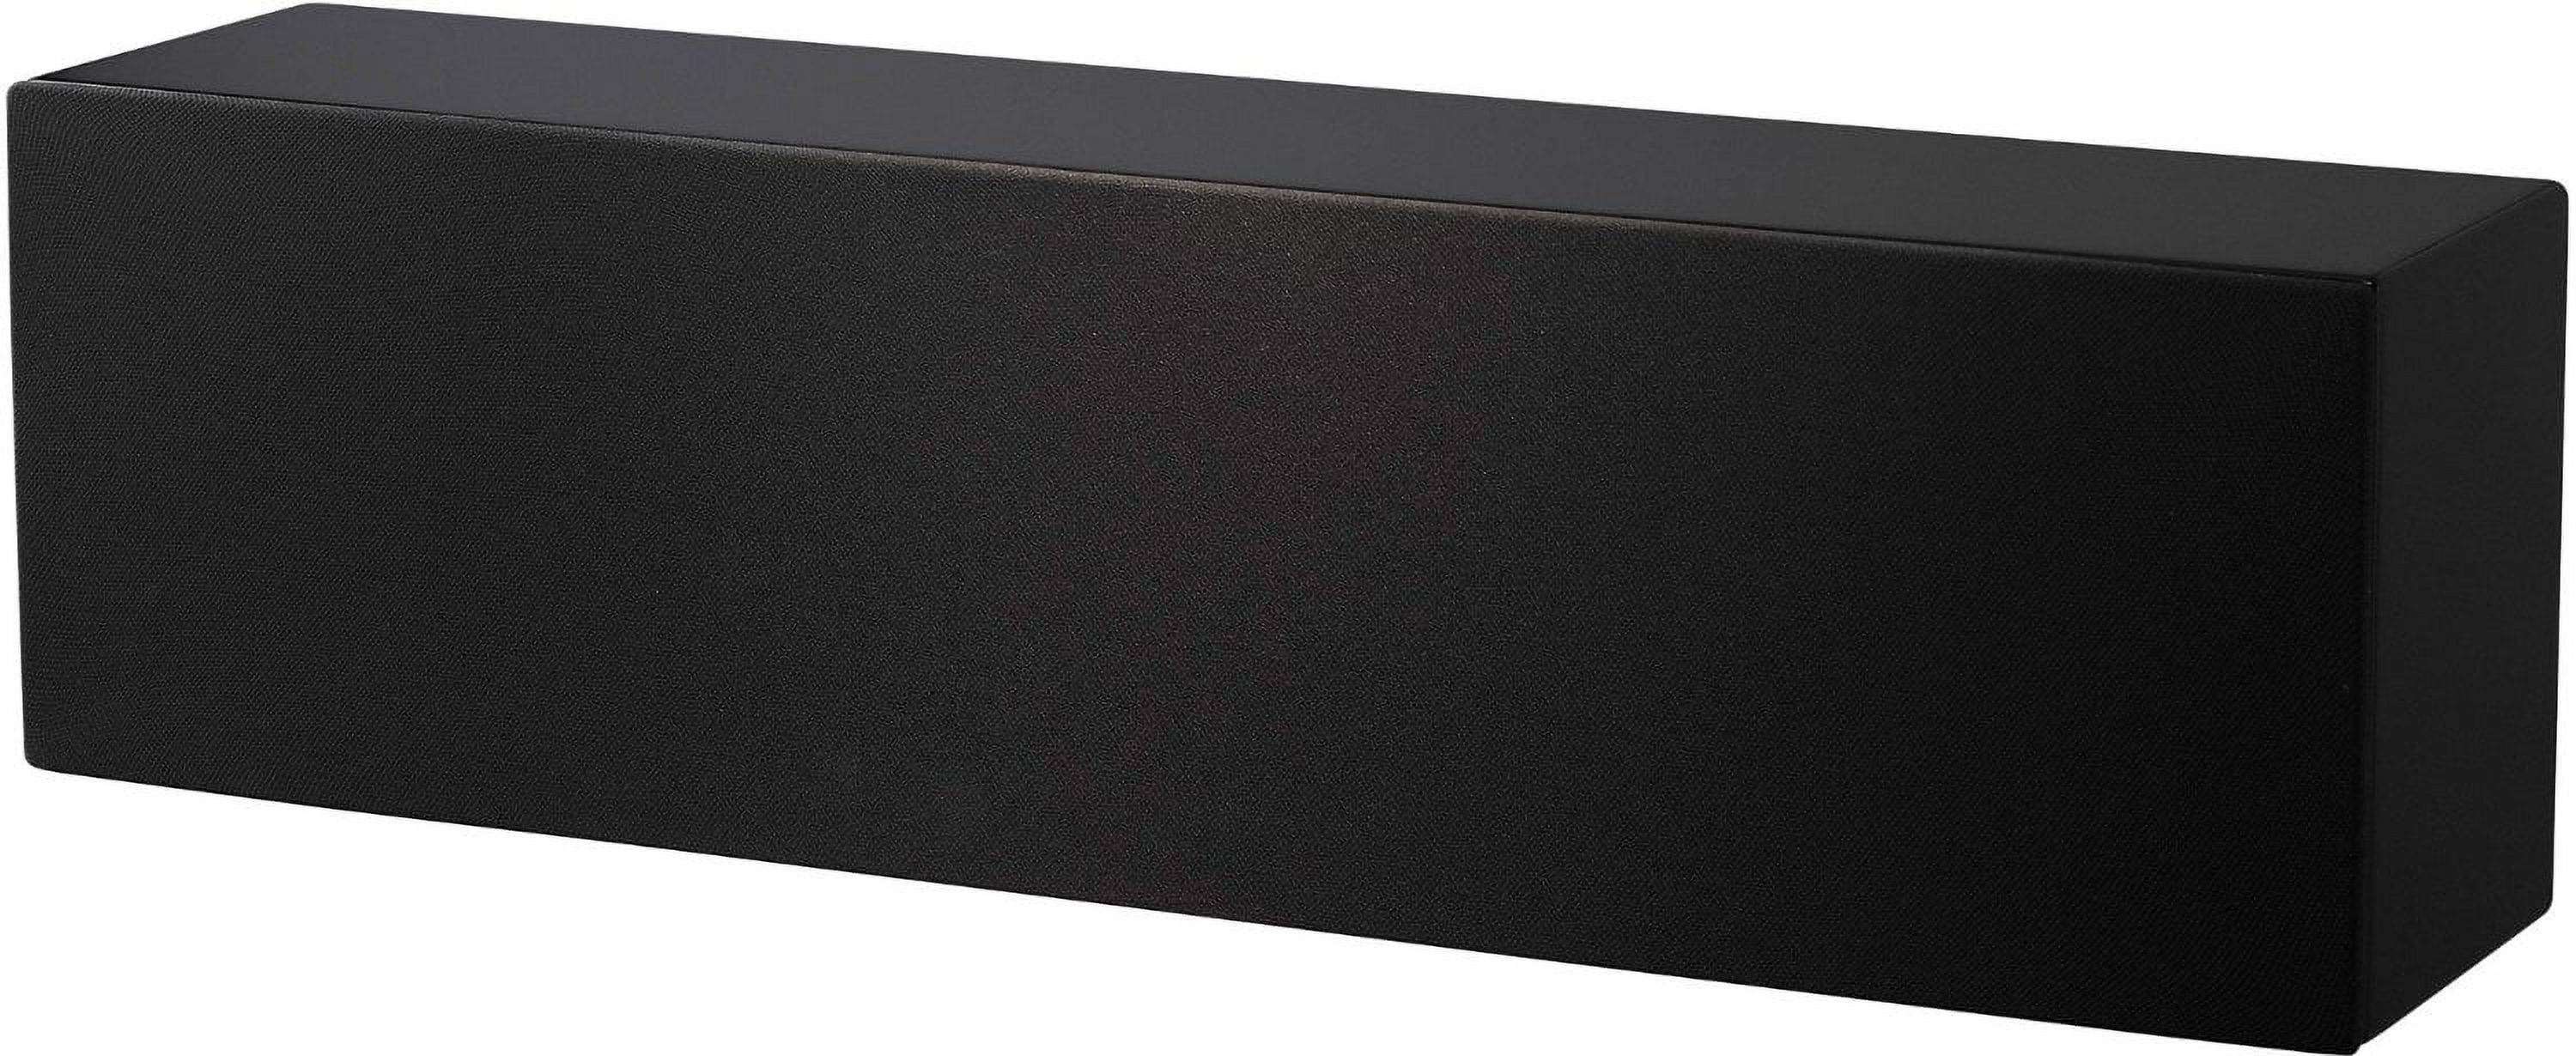 NHT Media Series Slim Center Channel Speaker - High Gloss Black - image 2 of 5